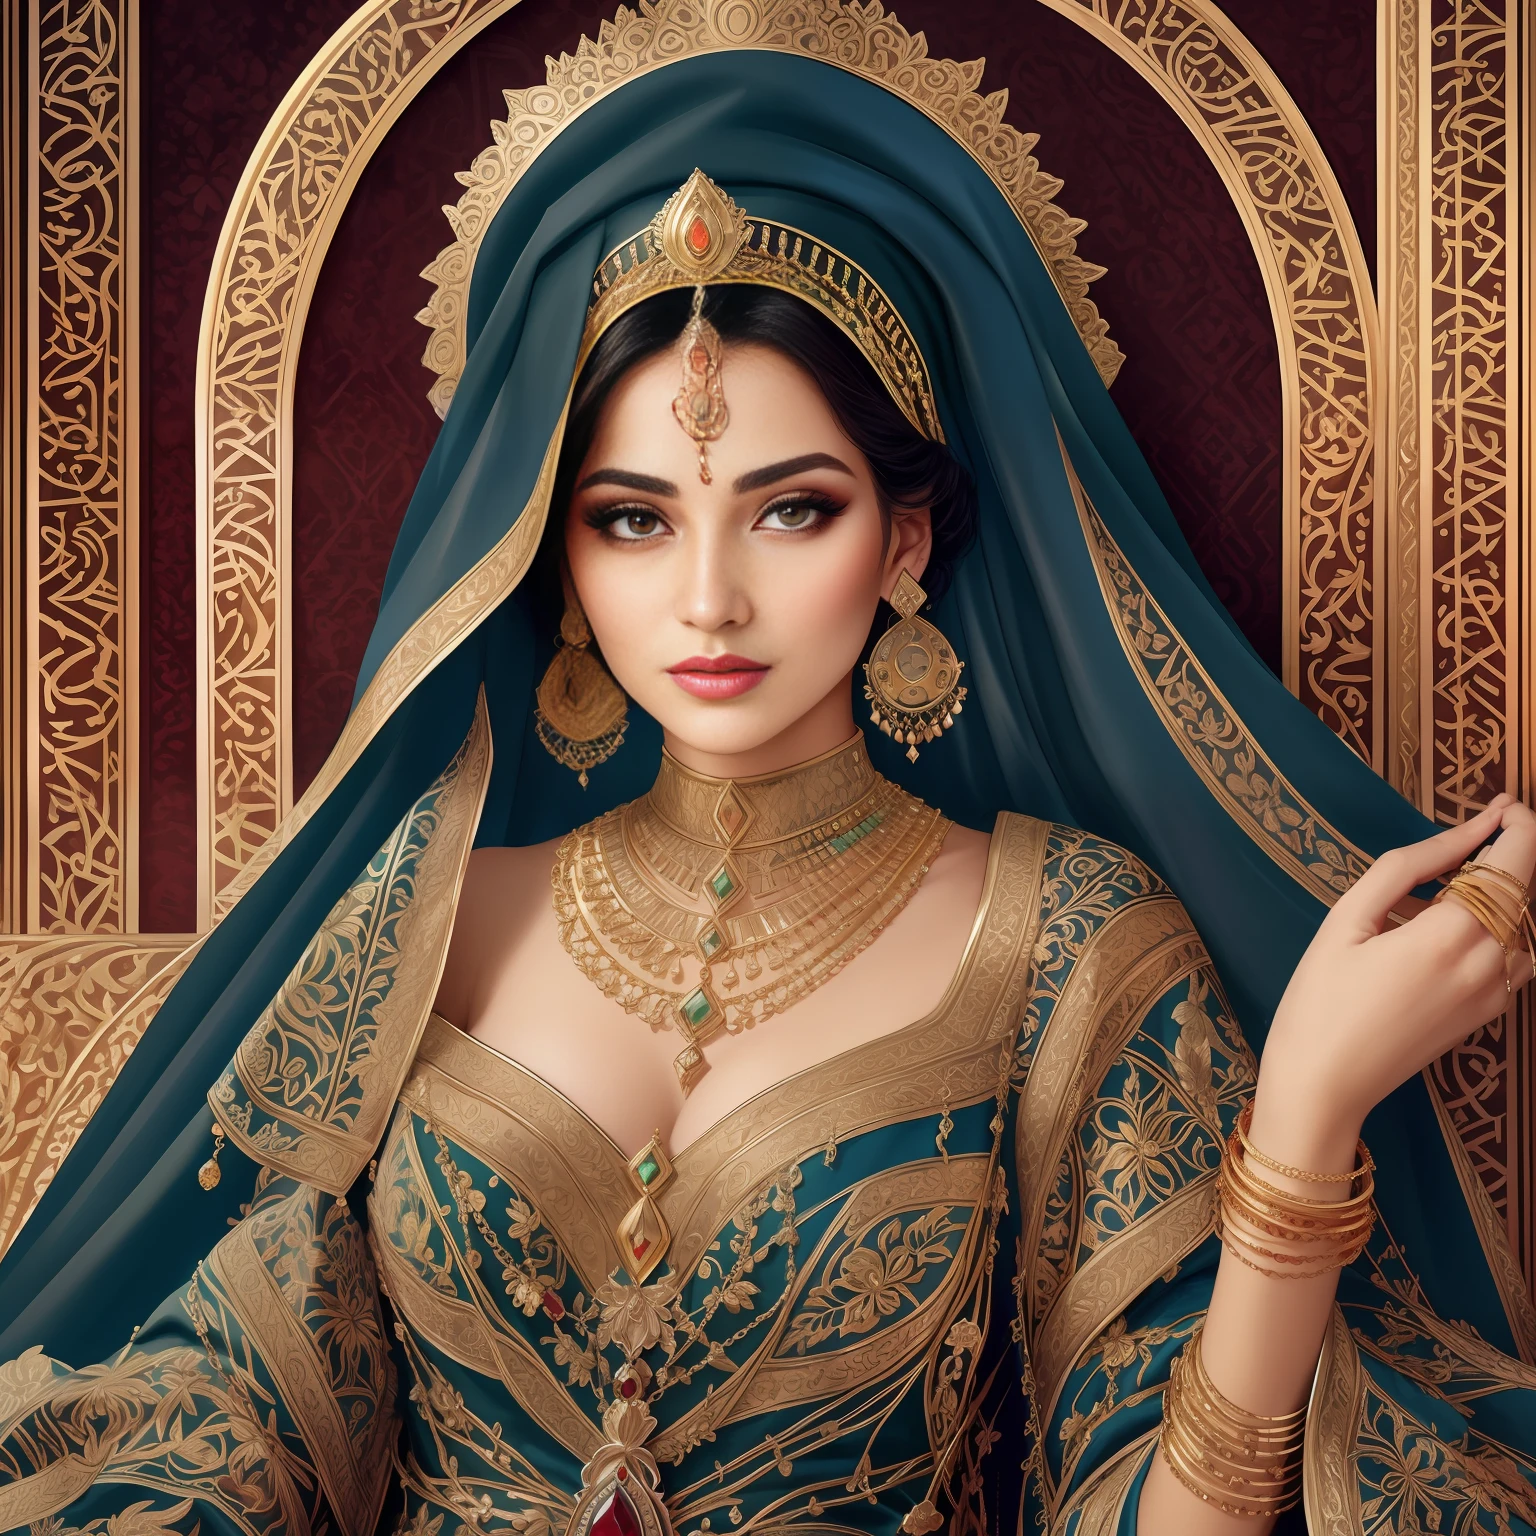 Арафедка в синей вуали с золотой и зеленой брошью, подробное лицо арабской женщины, Портрет богини крупным планом, Потрясающий портрет богини, 3D Портрет Богини, арабская красота, Портрет прекрасной богини, арабская принцесса, красивая арабская женщина, Ближневосточная кожа, Высококачественное фото в стиле фэнтези, Портретный снимок, Красавица с детальными лицами